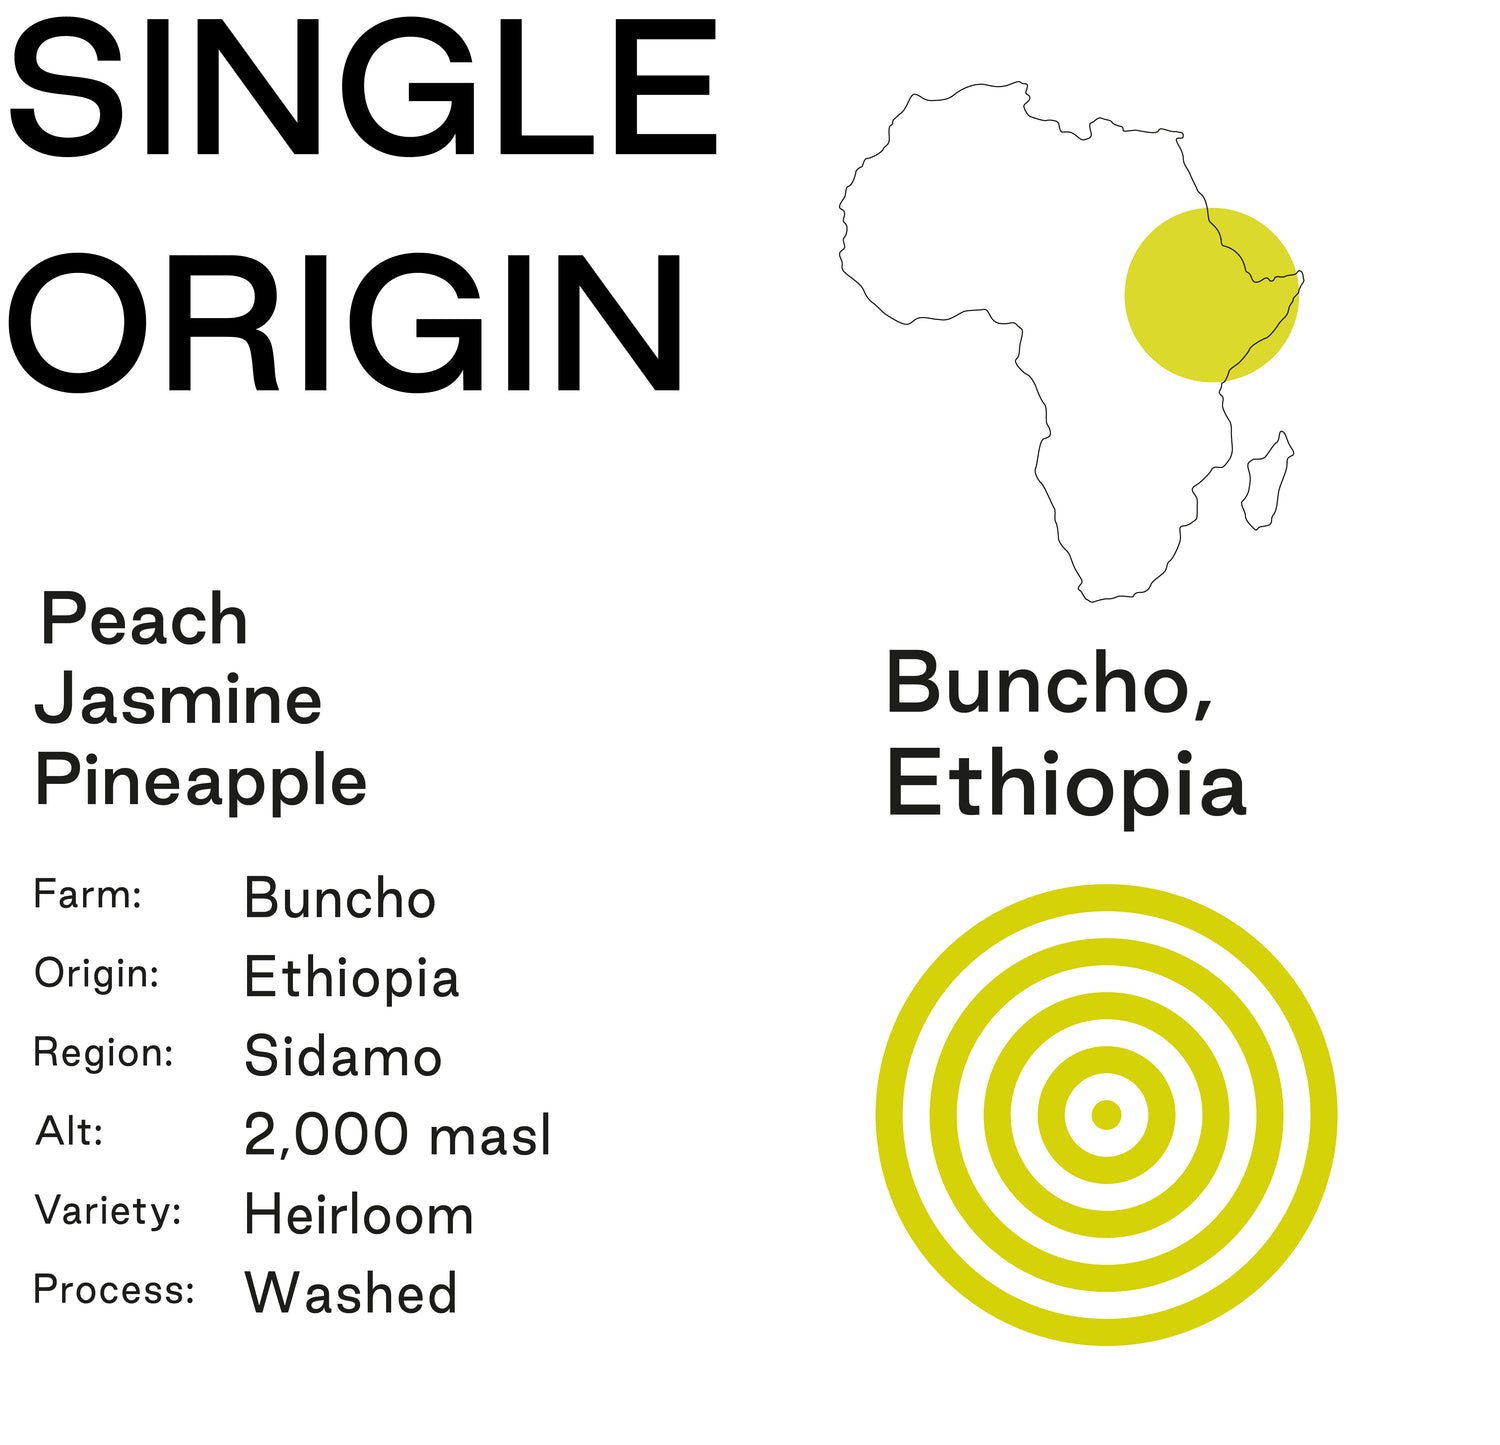 Buncho, Ethiopia